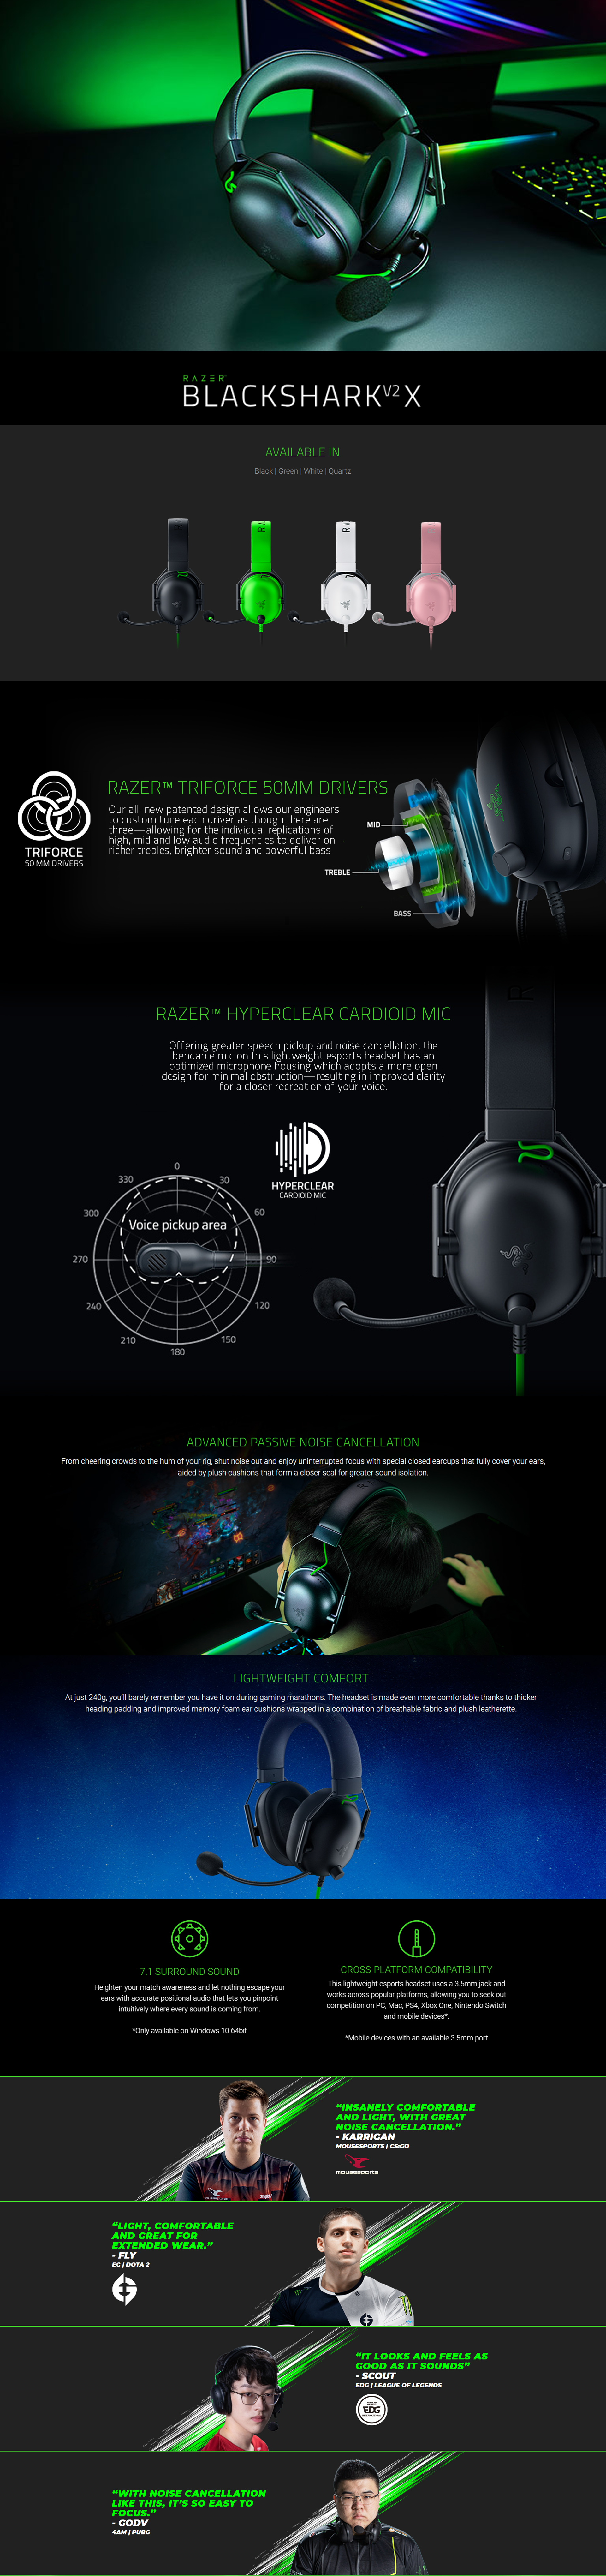 Razer_Blackshark_V2_X_Wired_Headset_Gaming